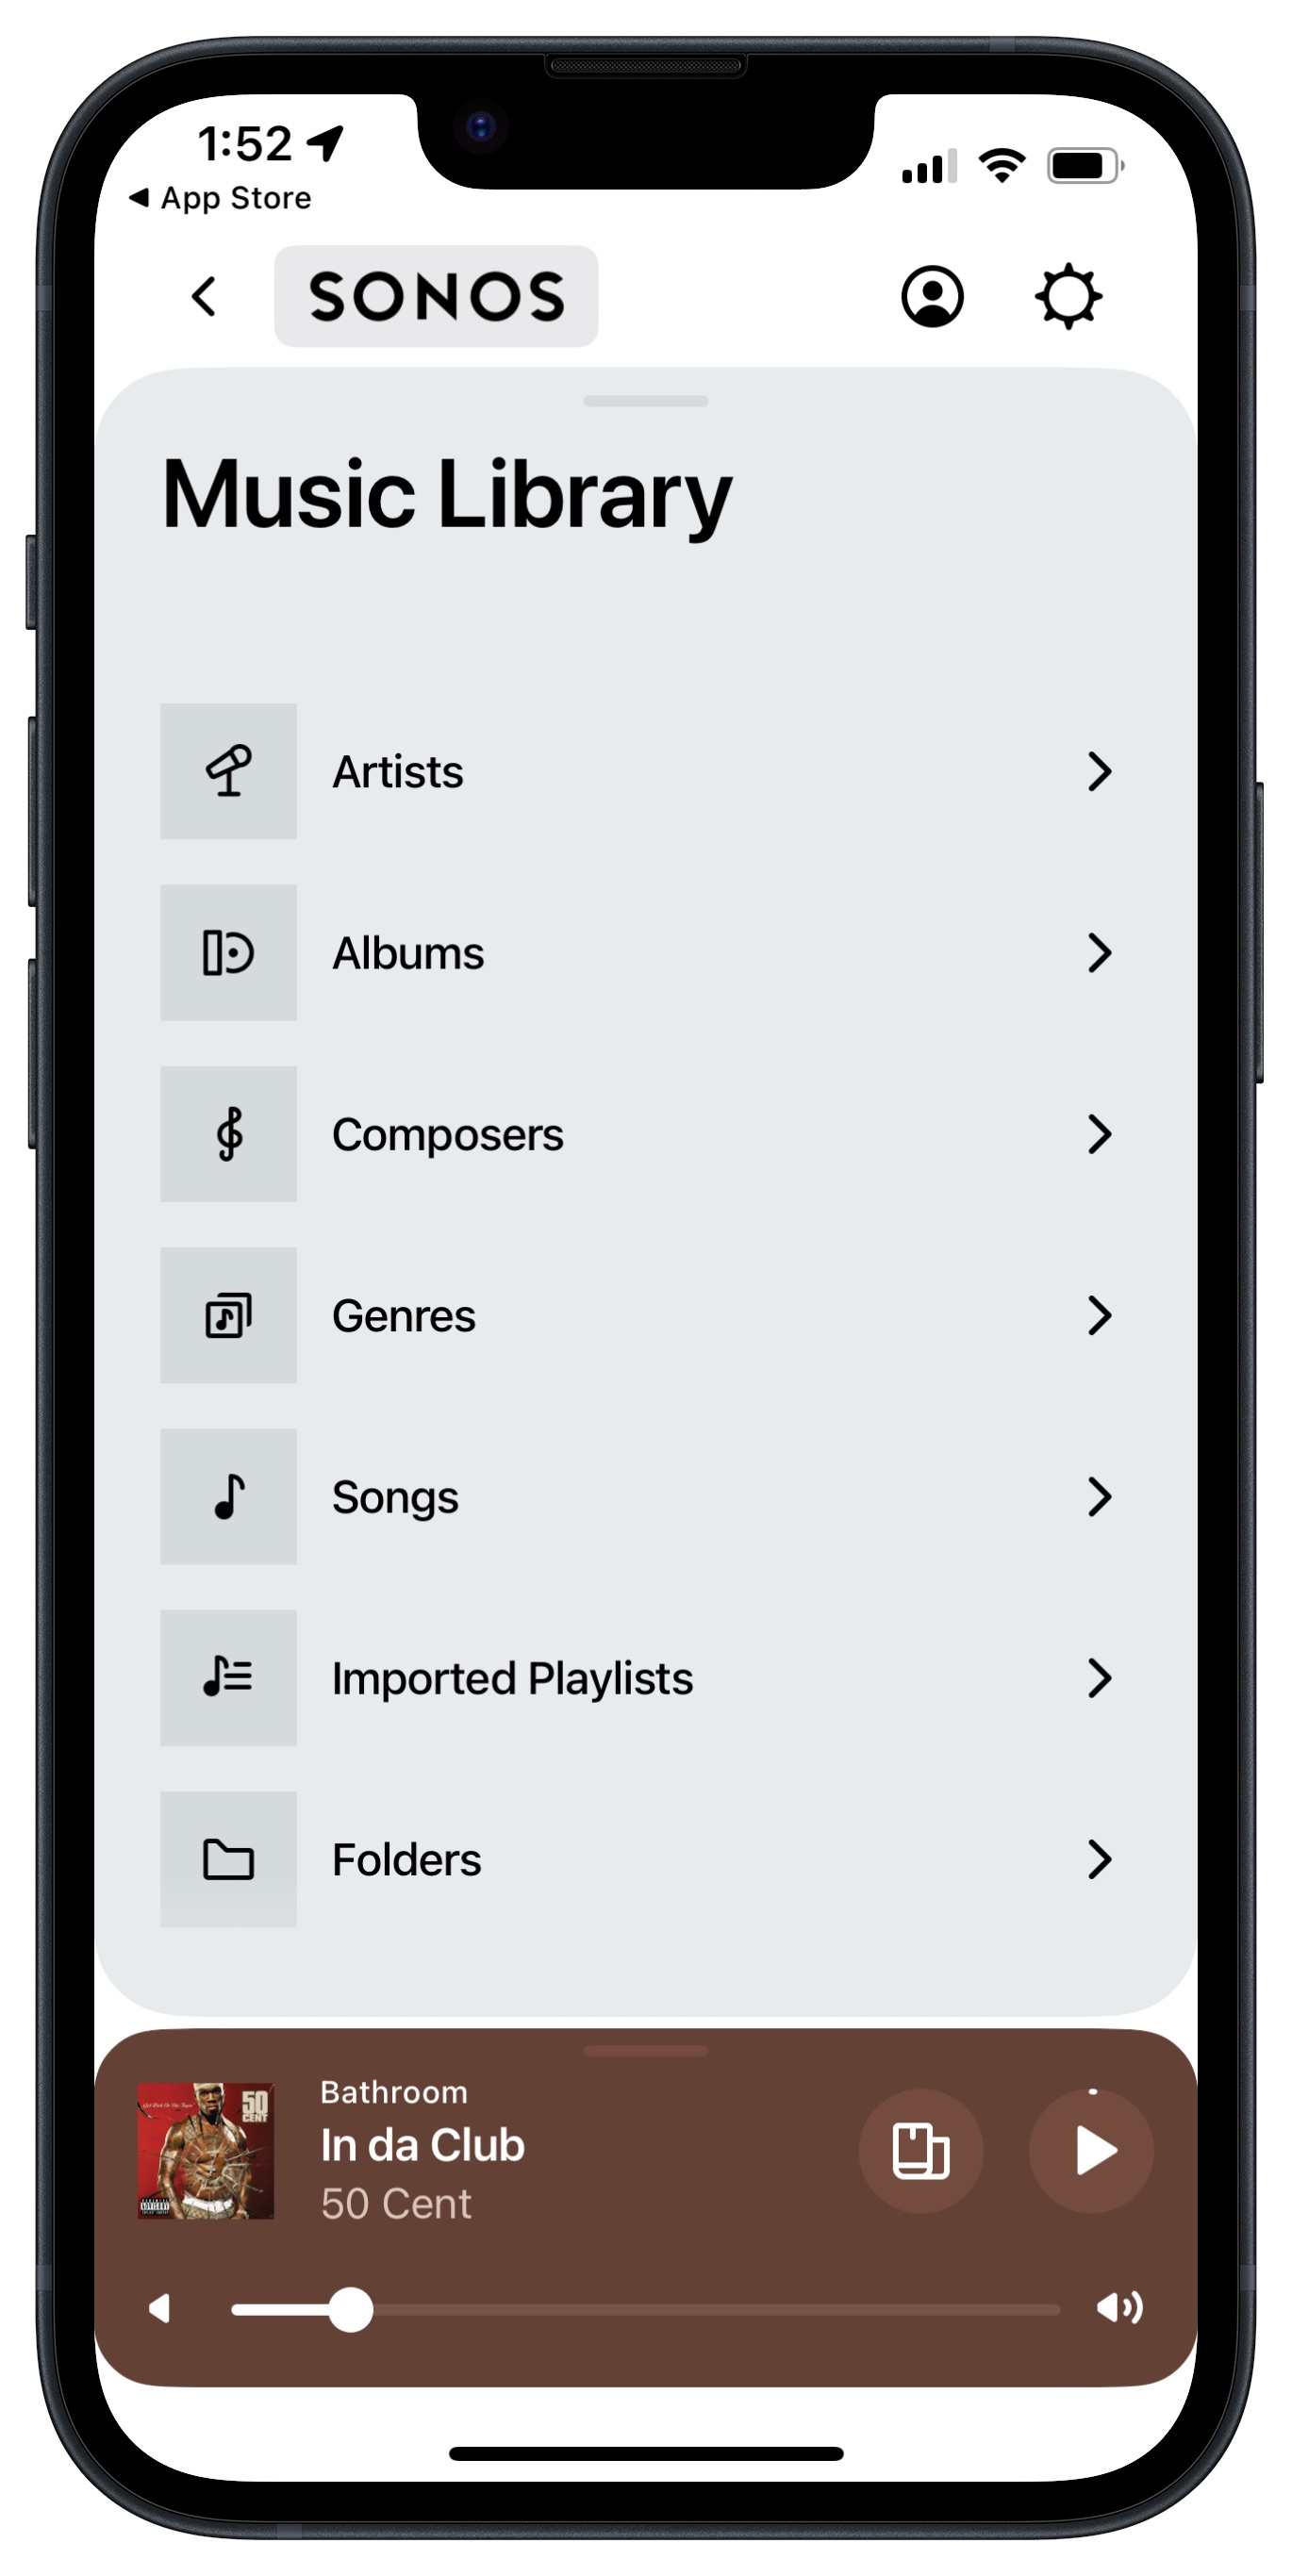 Nuevo diseño de la app Sonos para iOS.